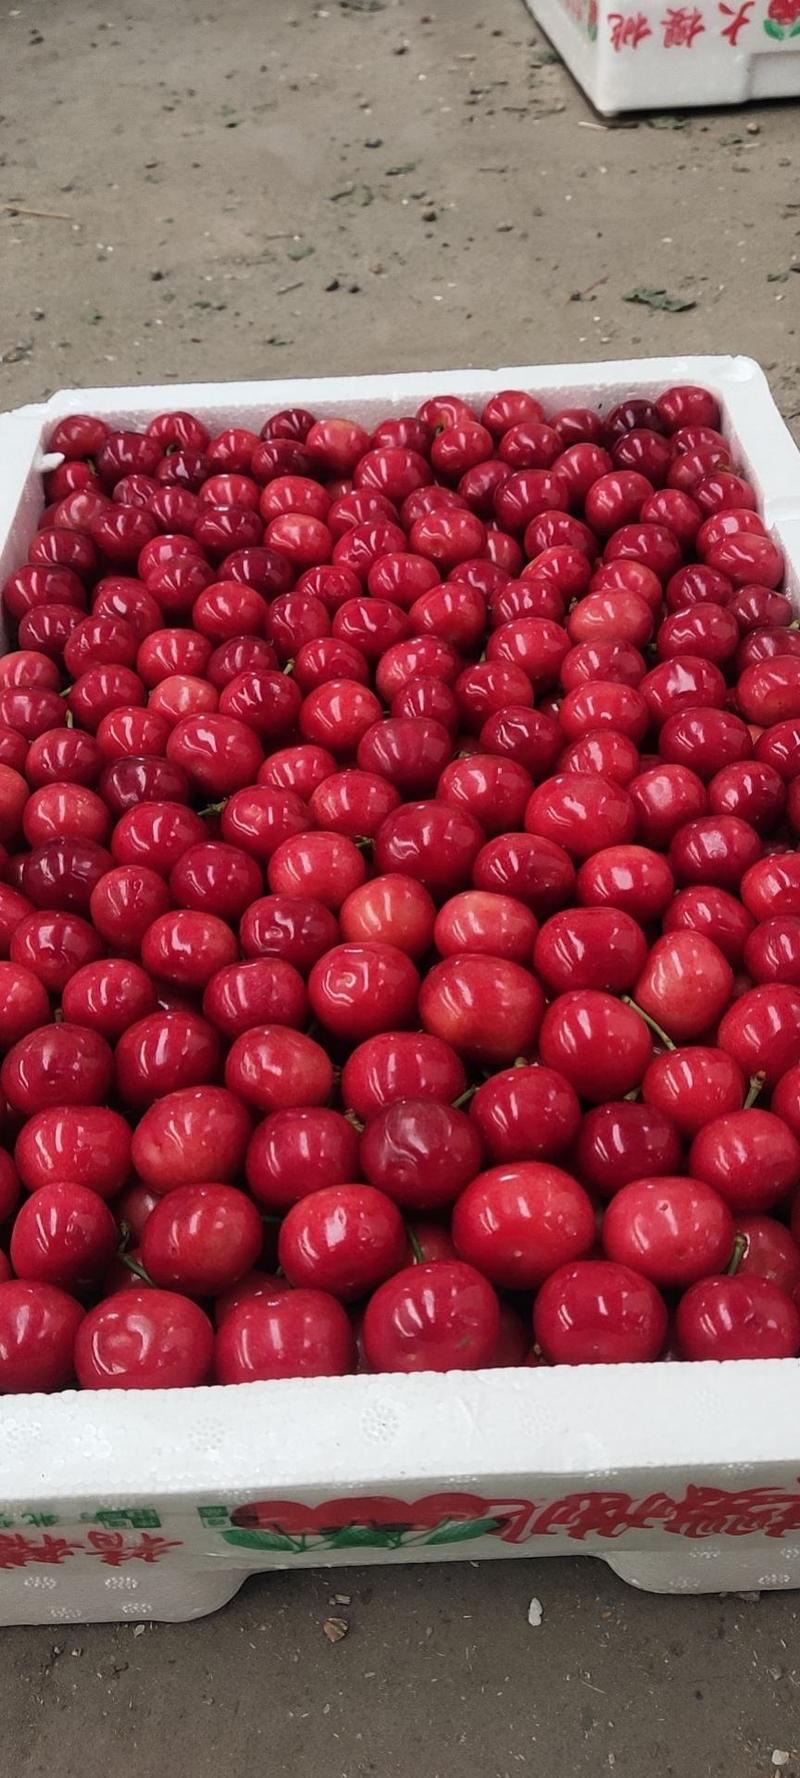 精品樱桃批发美早红灯先锋等品种齐全全国发货